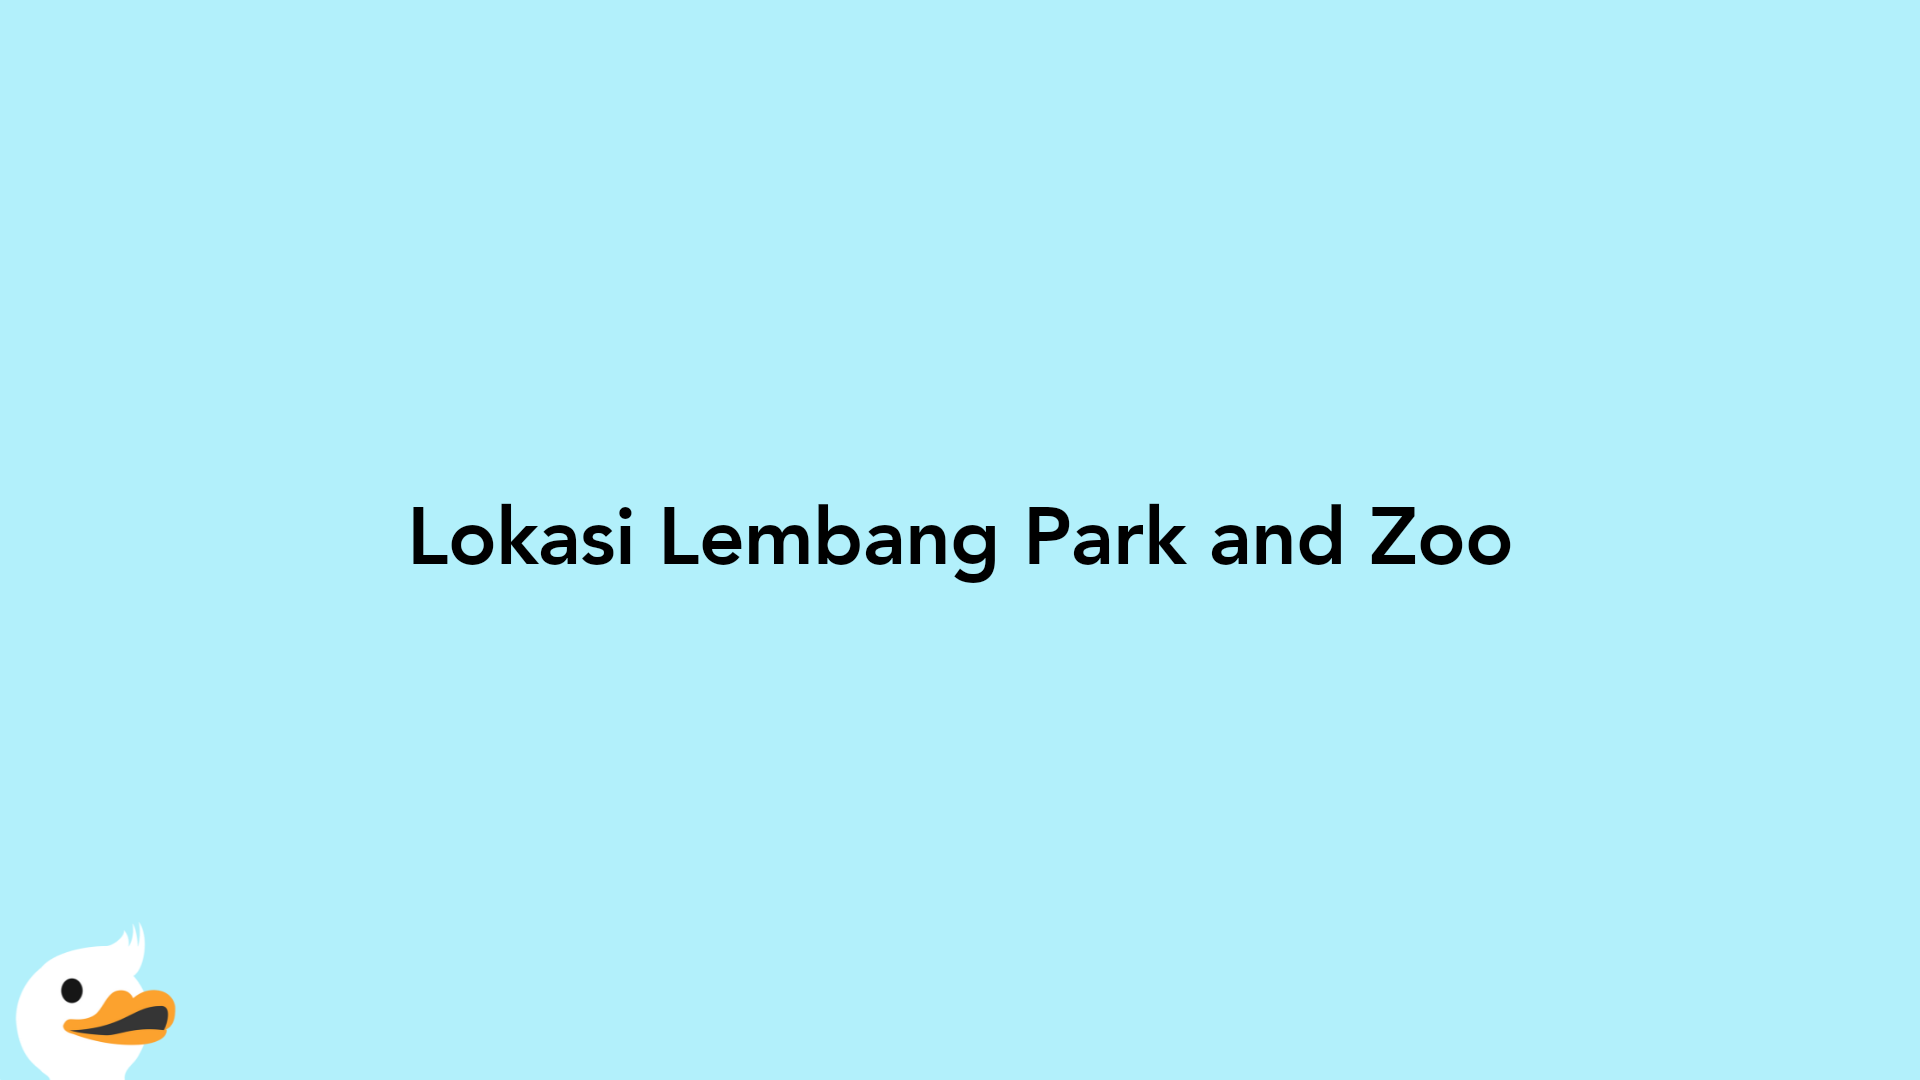 Lokasi Lembang Park and Zoo